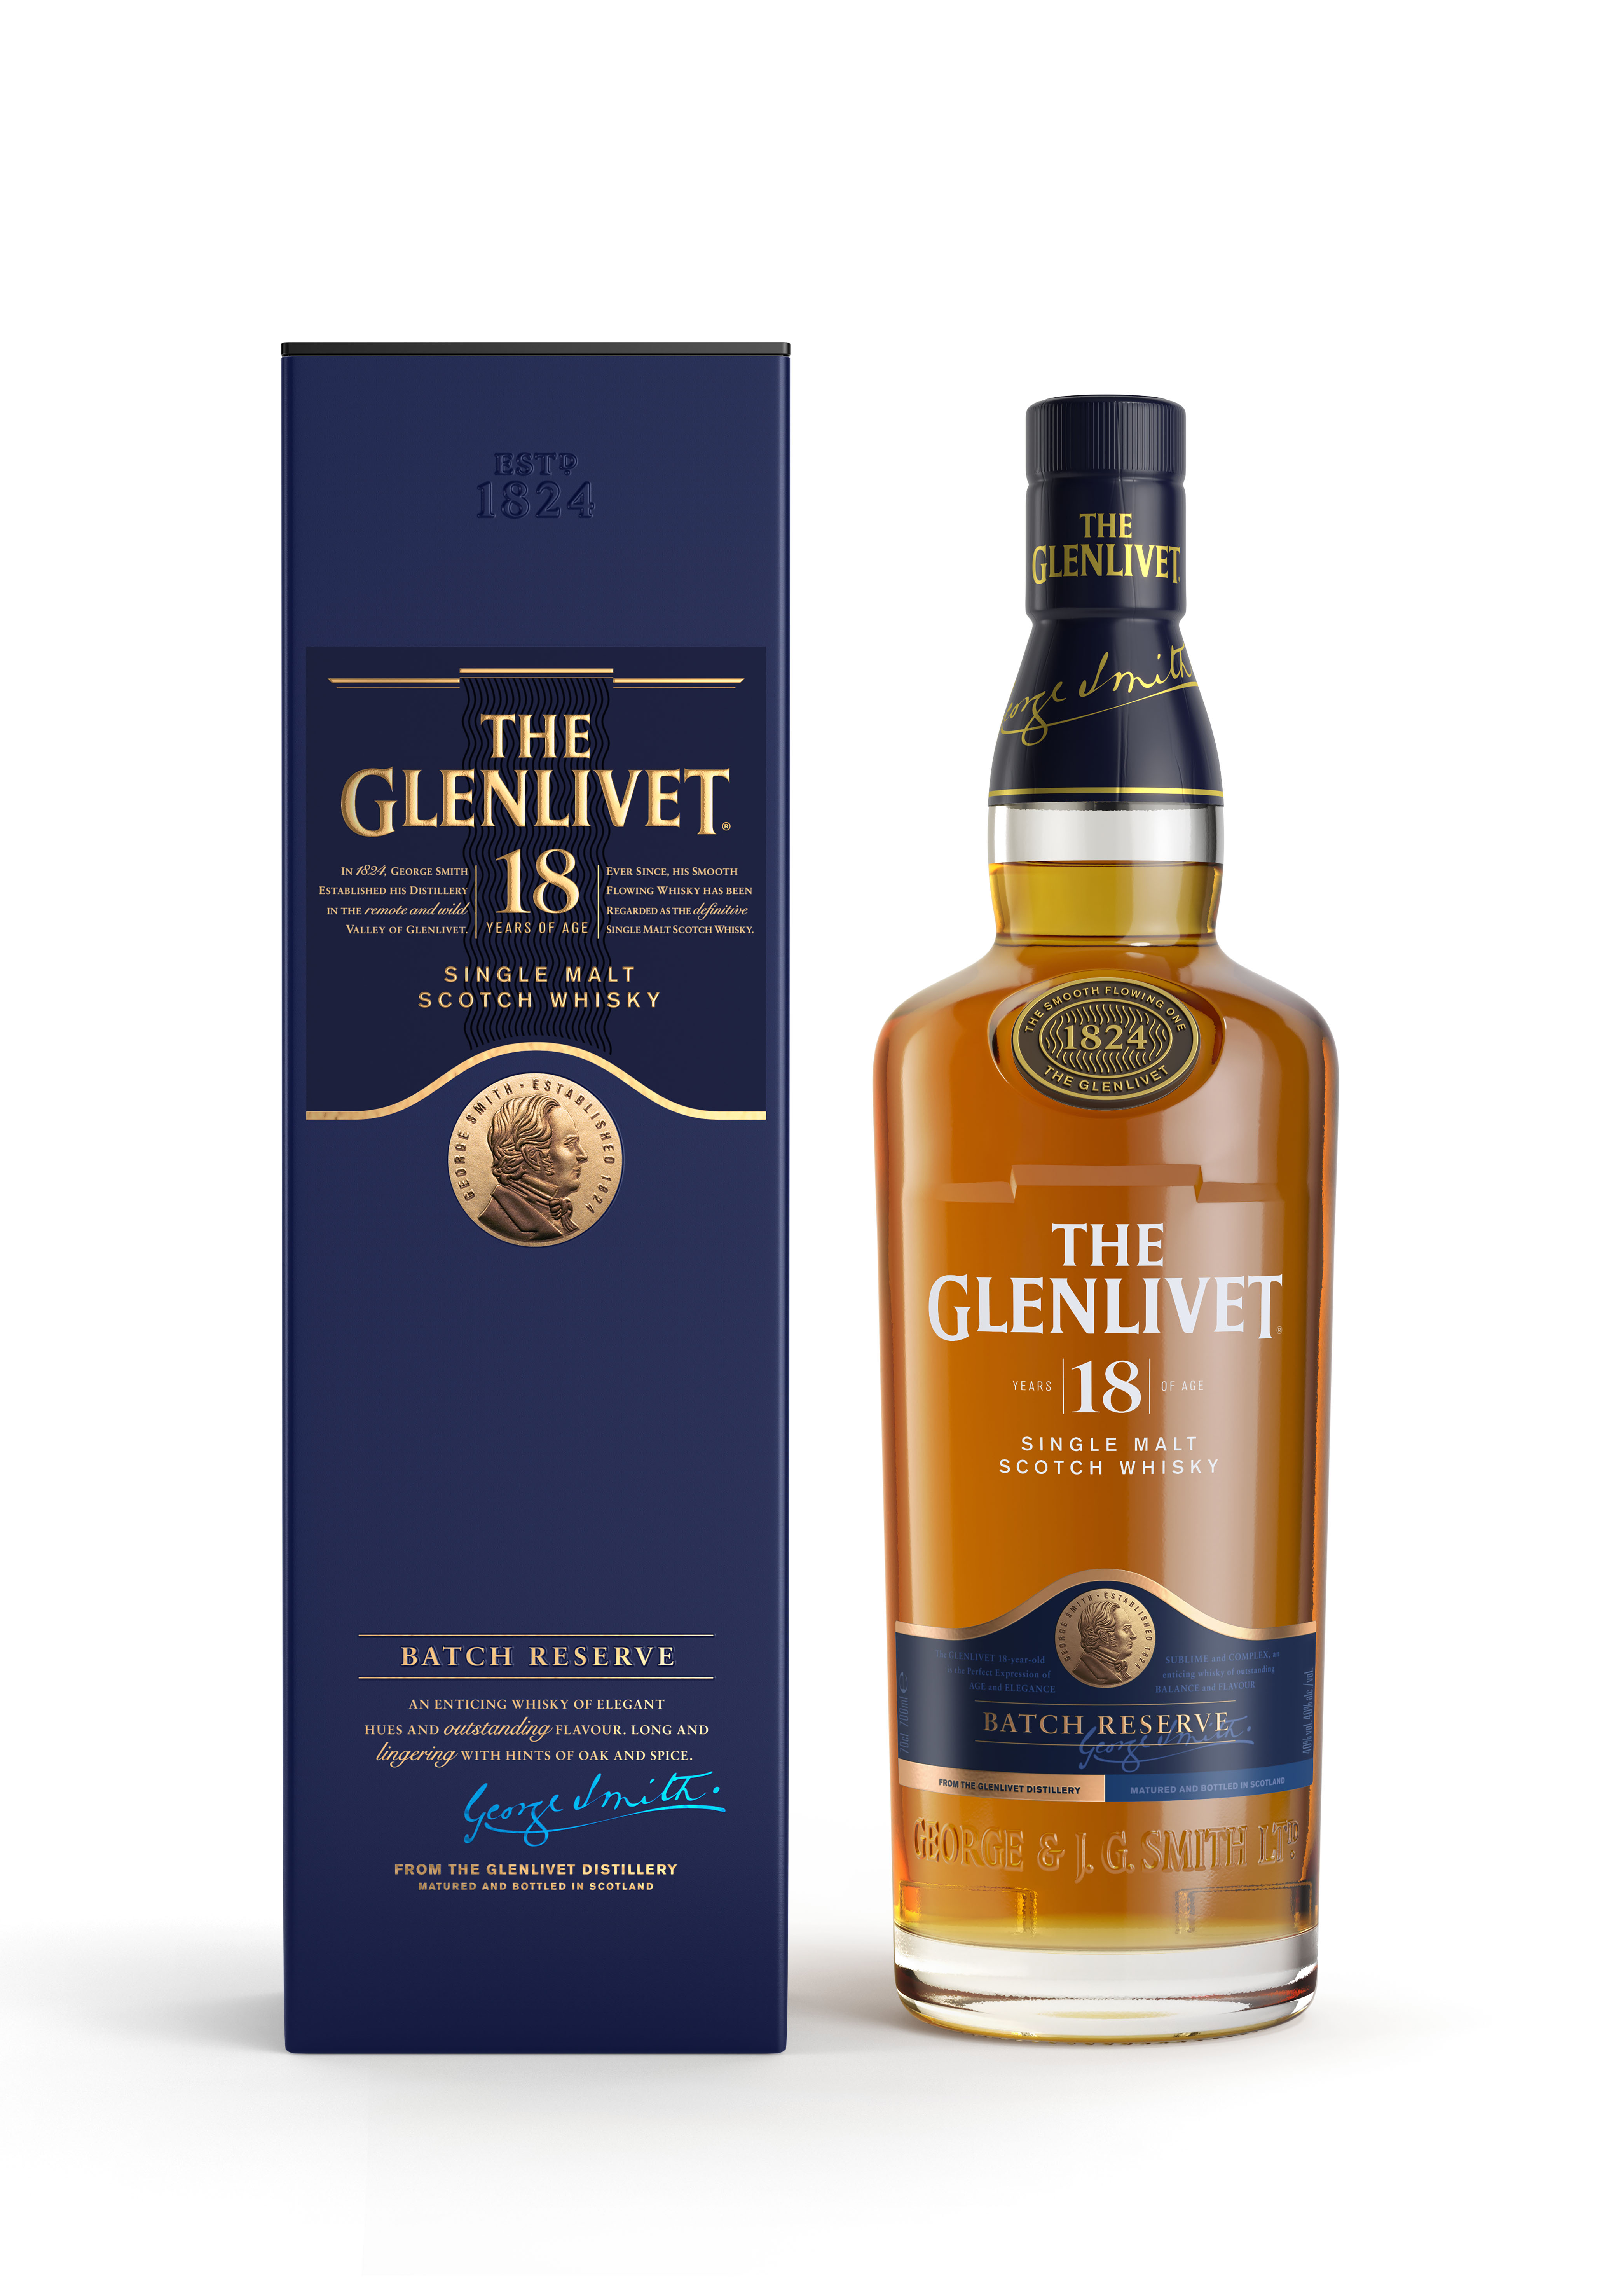 The Glenlivet 18 Jahre Whisky